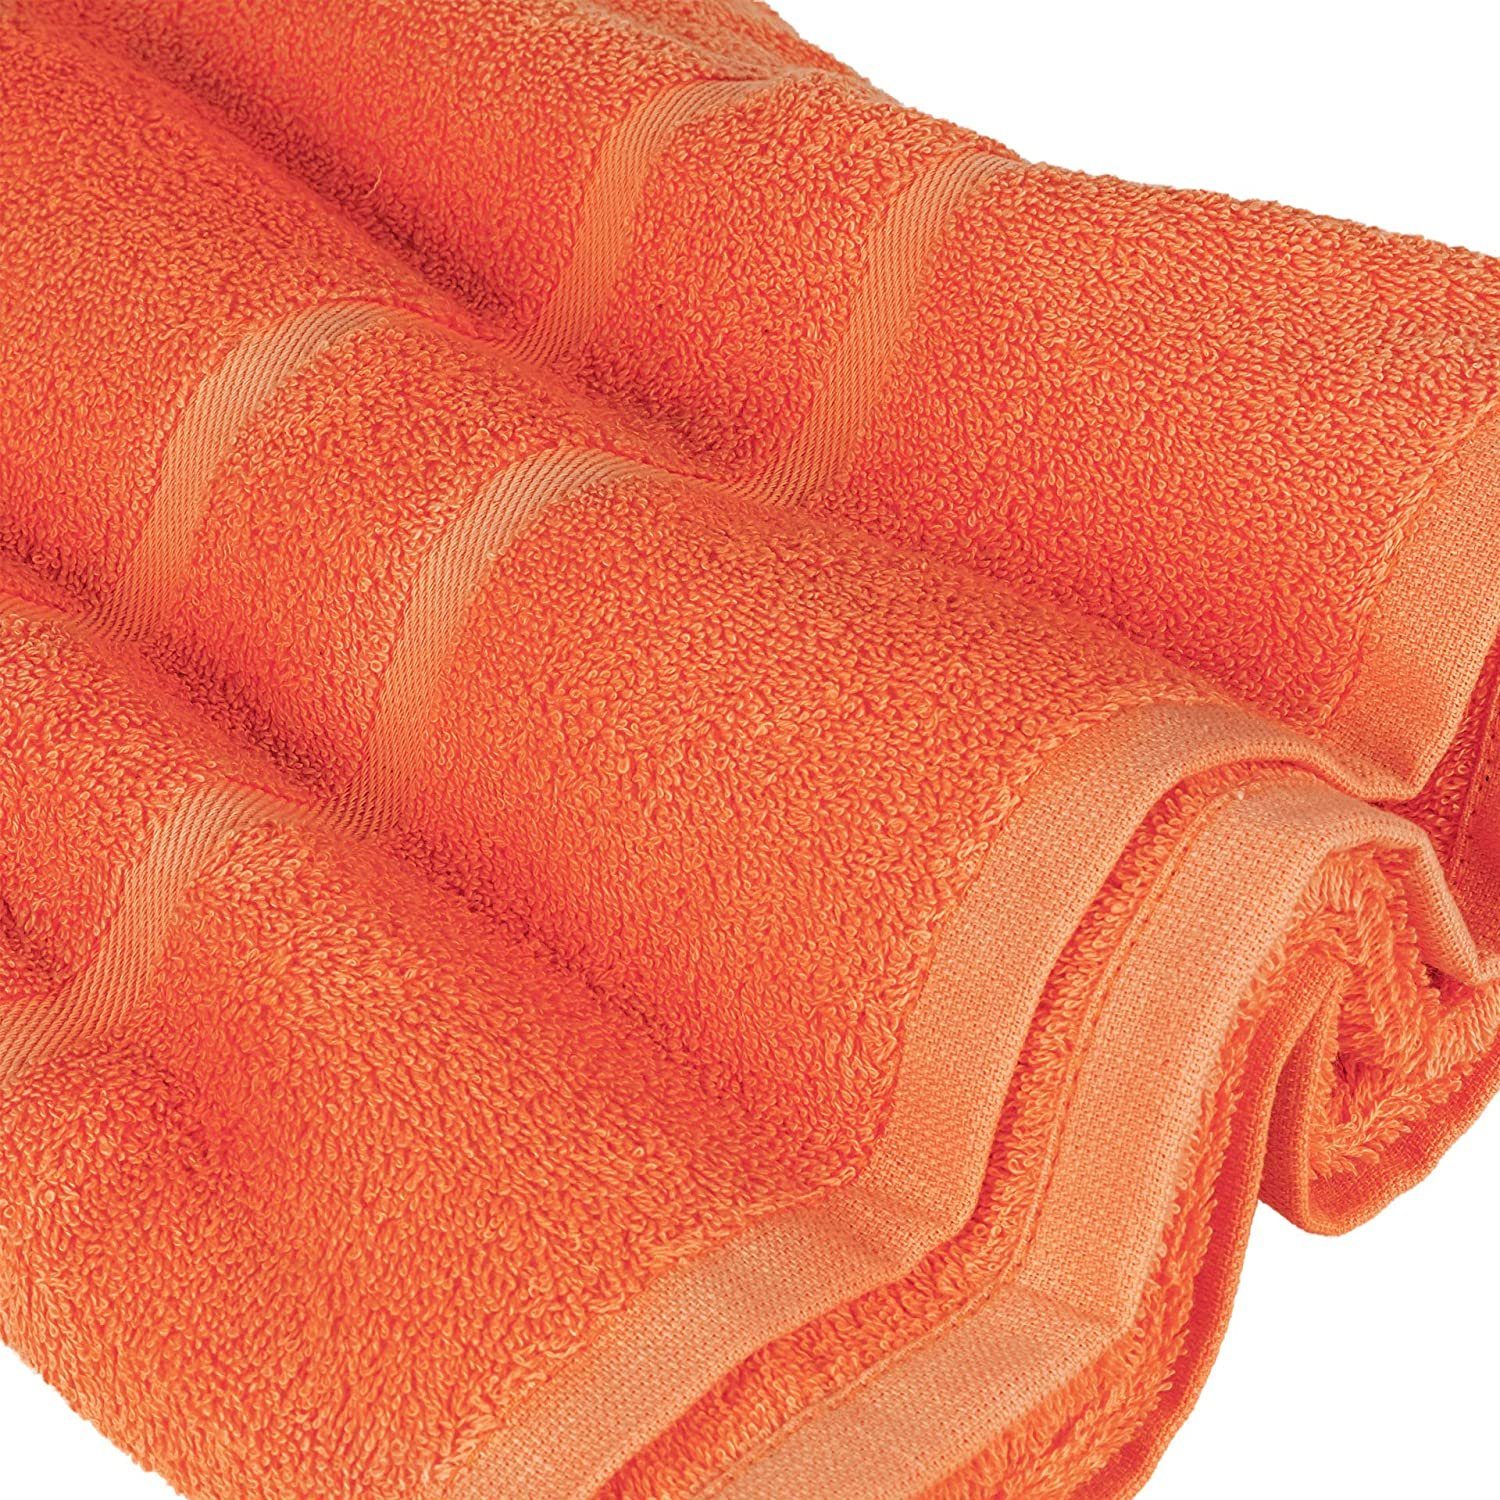 GSM Gästehandtuch in (10 Handtuch 2x Farben 4x verschiedenen Duschtücher 500 StickandShine Teilig) Handtücher Handtuch Orange Pack, 500 4x als Frottee 100% GSM Baumwolle SET Baumwolle Set 100% 10er